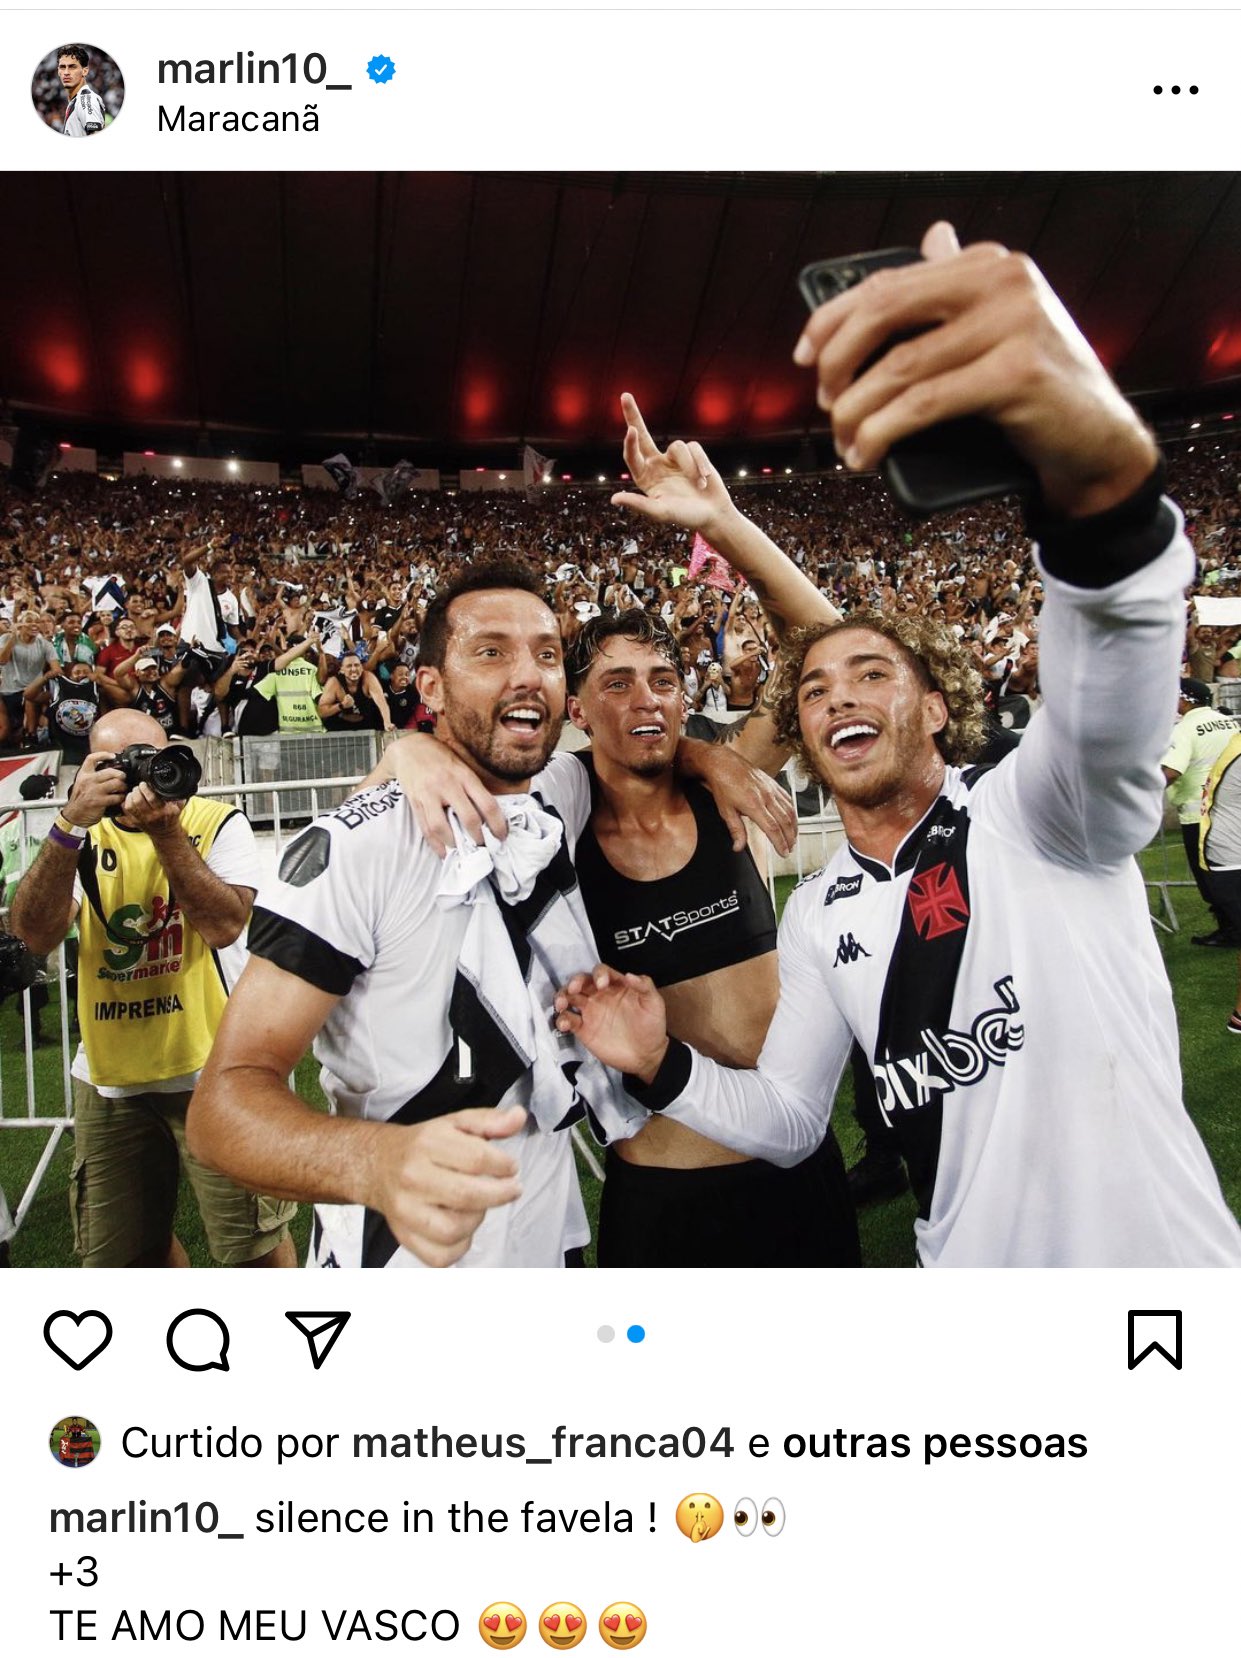 Meia do Flamengo curte postagem provocativa de atleta do Vasco